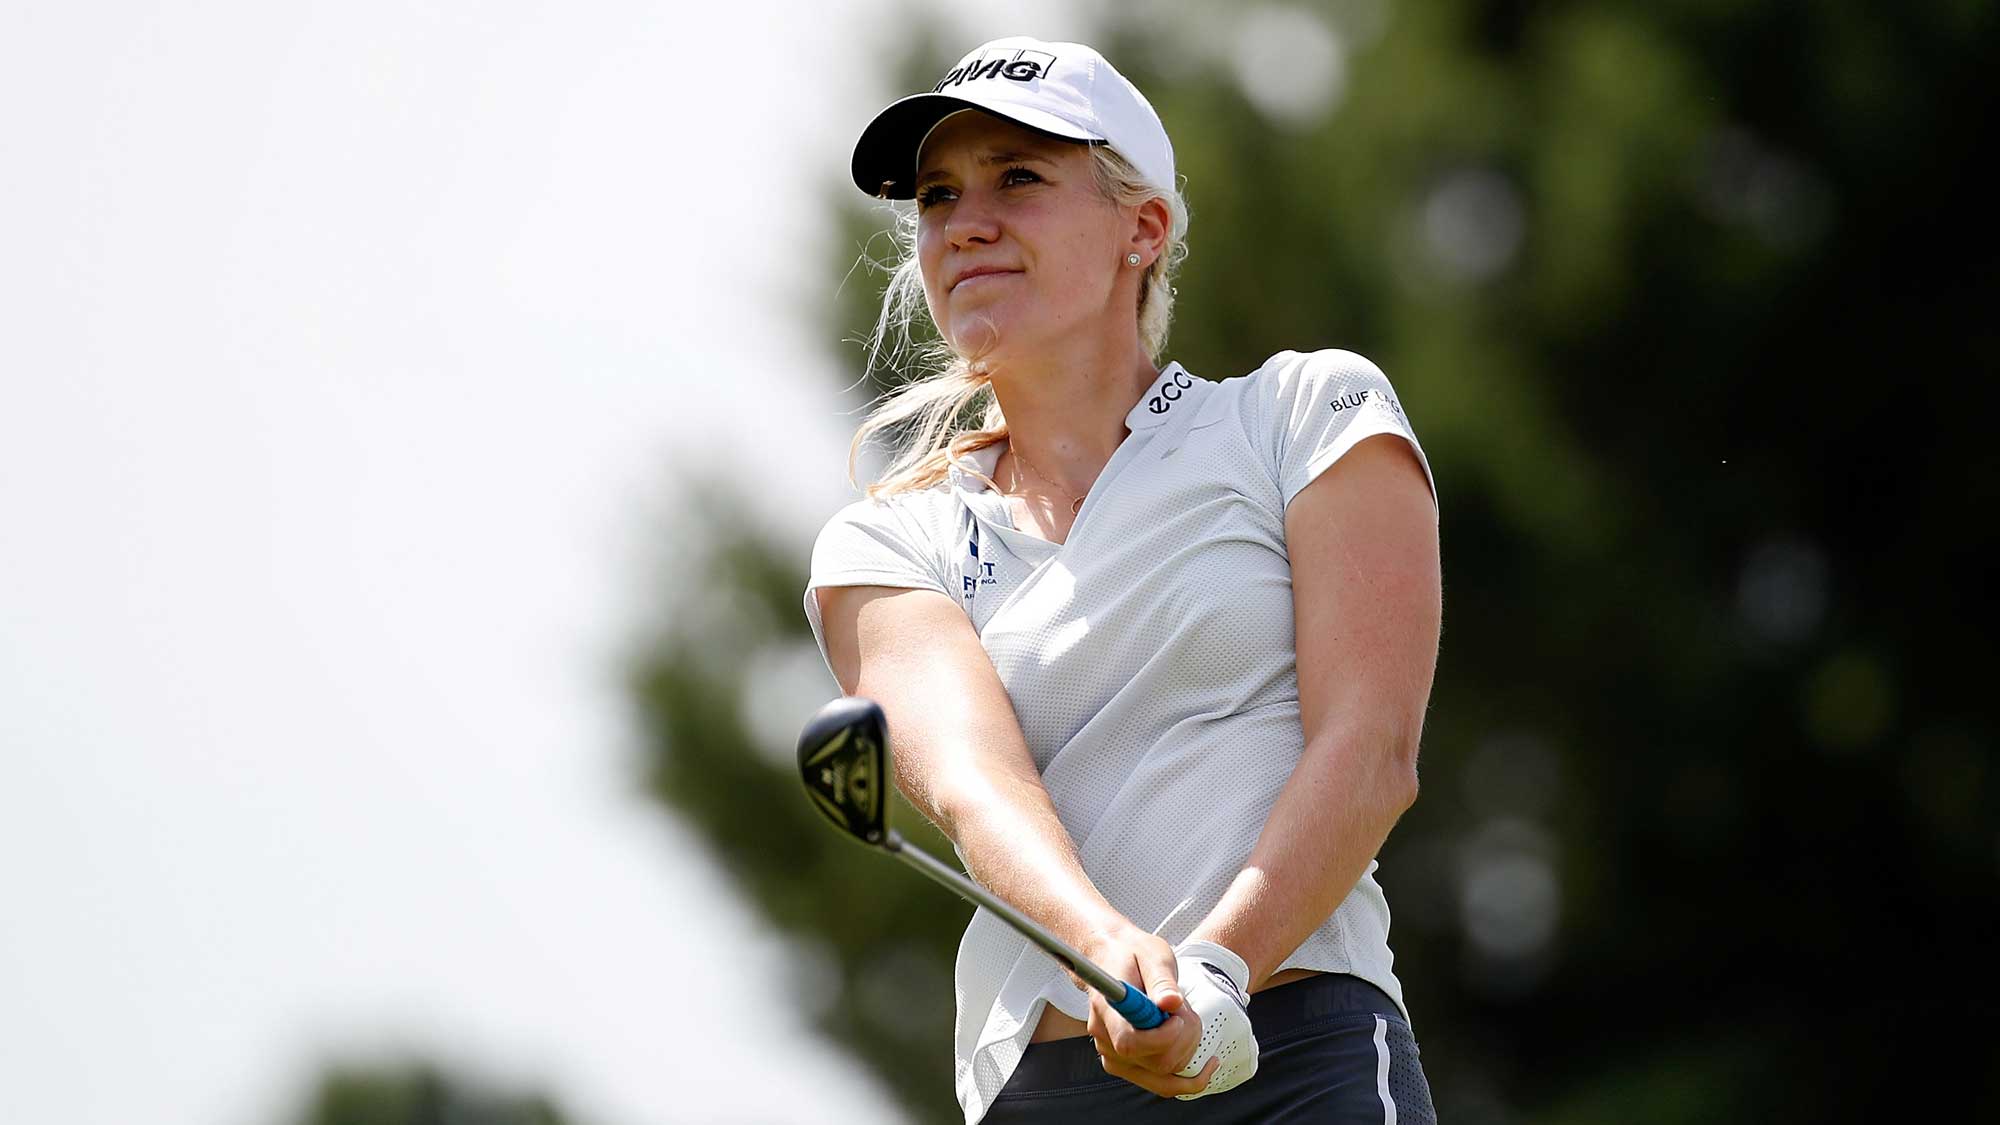 Nữ golfer đầu tiên của Iceland đã có cú Hole-in-one ngày đầu mở màn ANA Inspiration